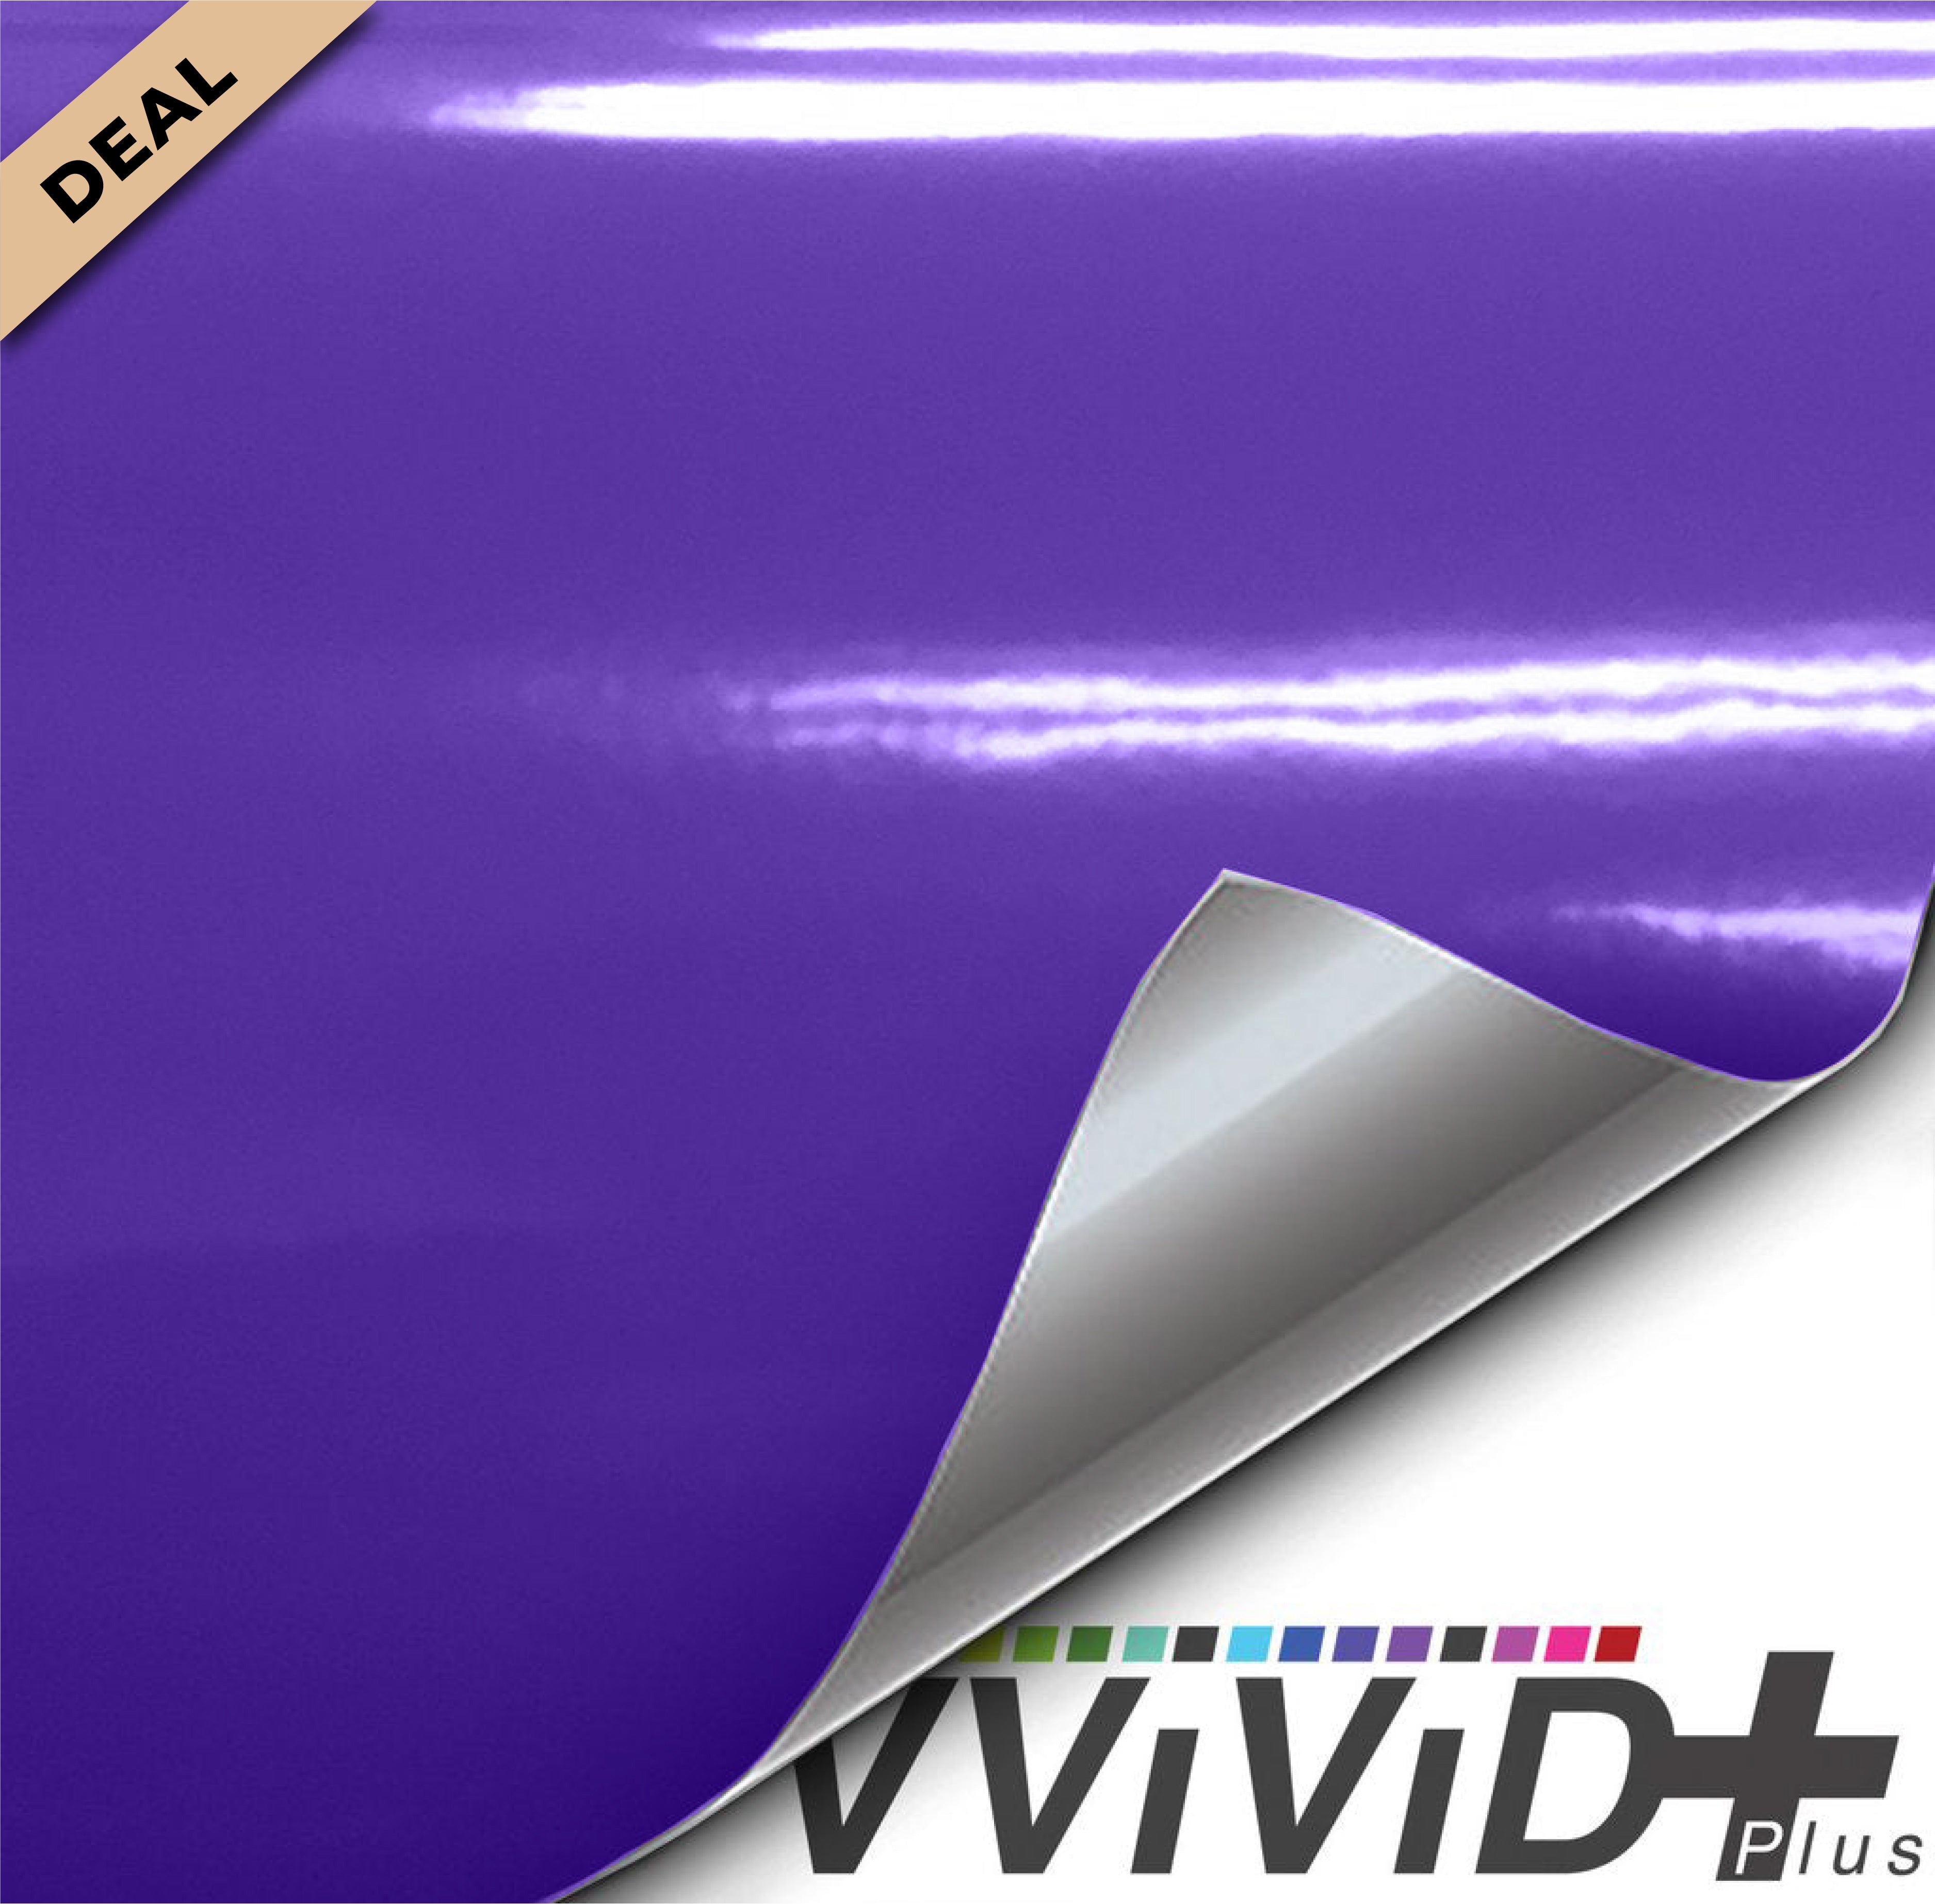 VViViD+ Gloss Midnight Purple (10ft x 5ft) - W.D-1